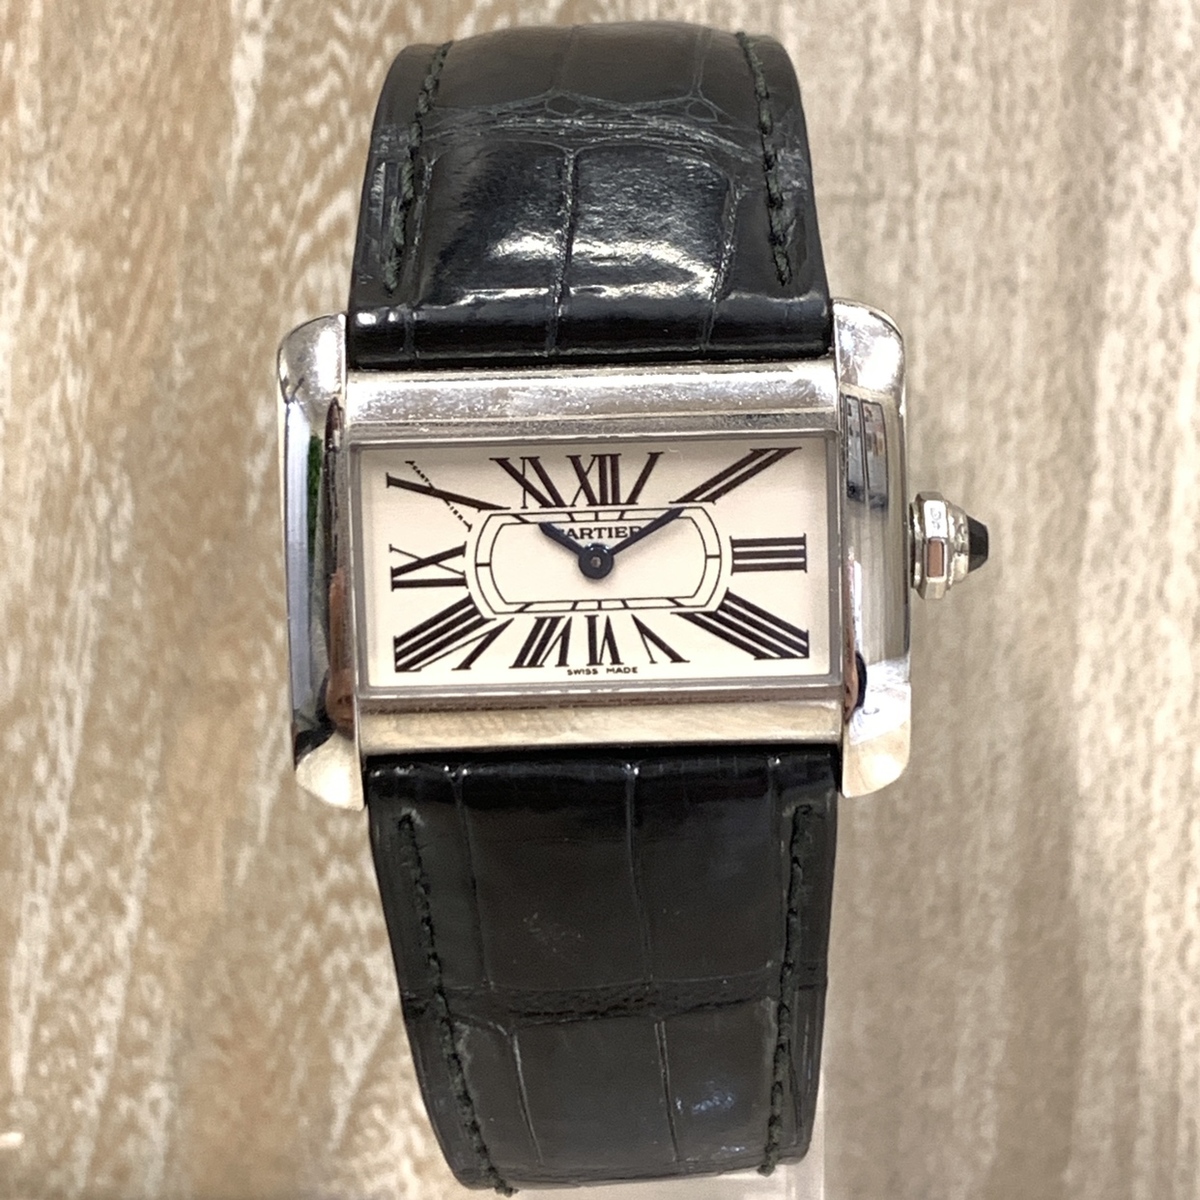 カルティエの2599 タンクミニディヴァン クロコベルト 腕時計の買取実績です。